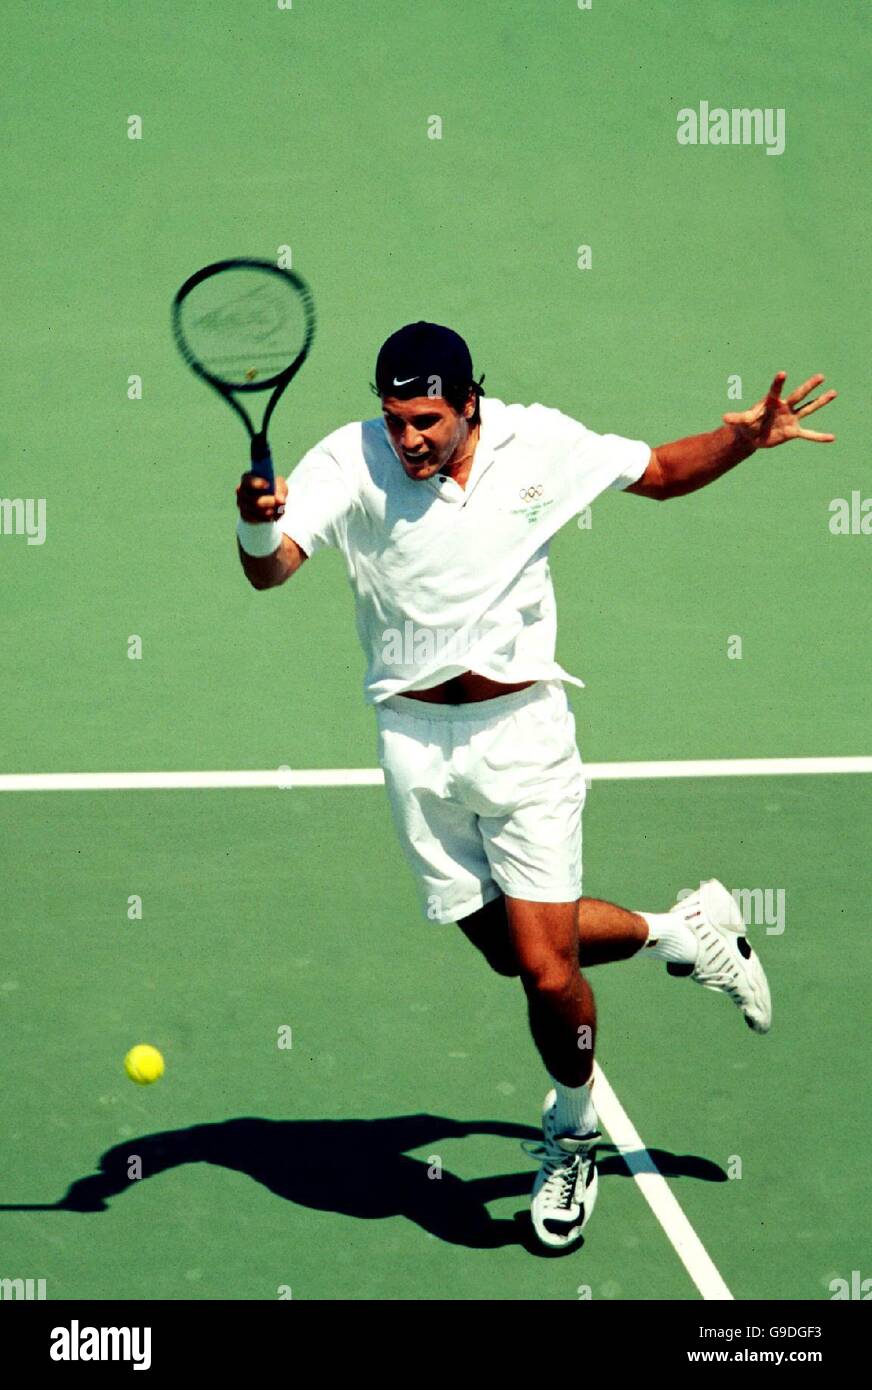 Tennis - Sydney 2000 Olympics Games - Men's Singles Final - Tommy Haas v  Yevgeny Kafelnikov Stock Photo - Alamy